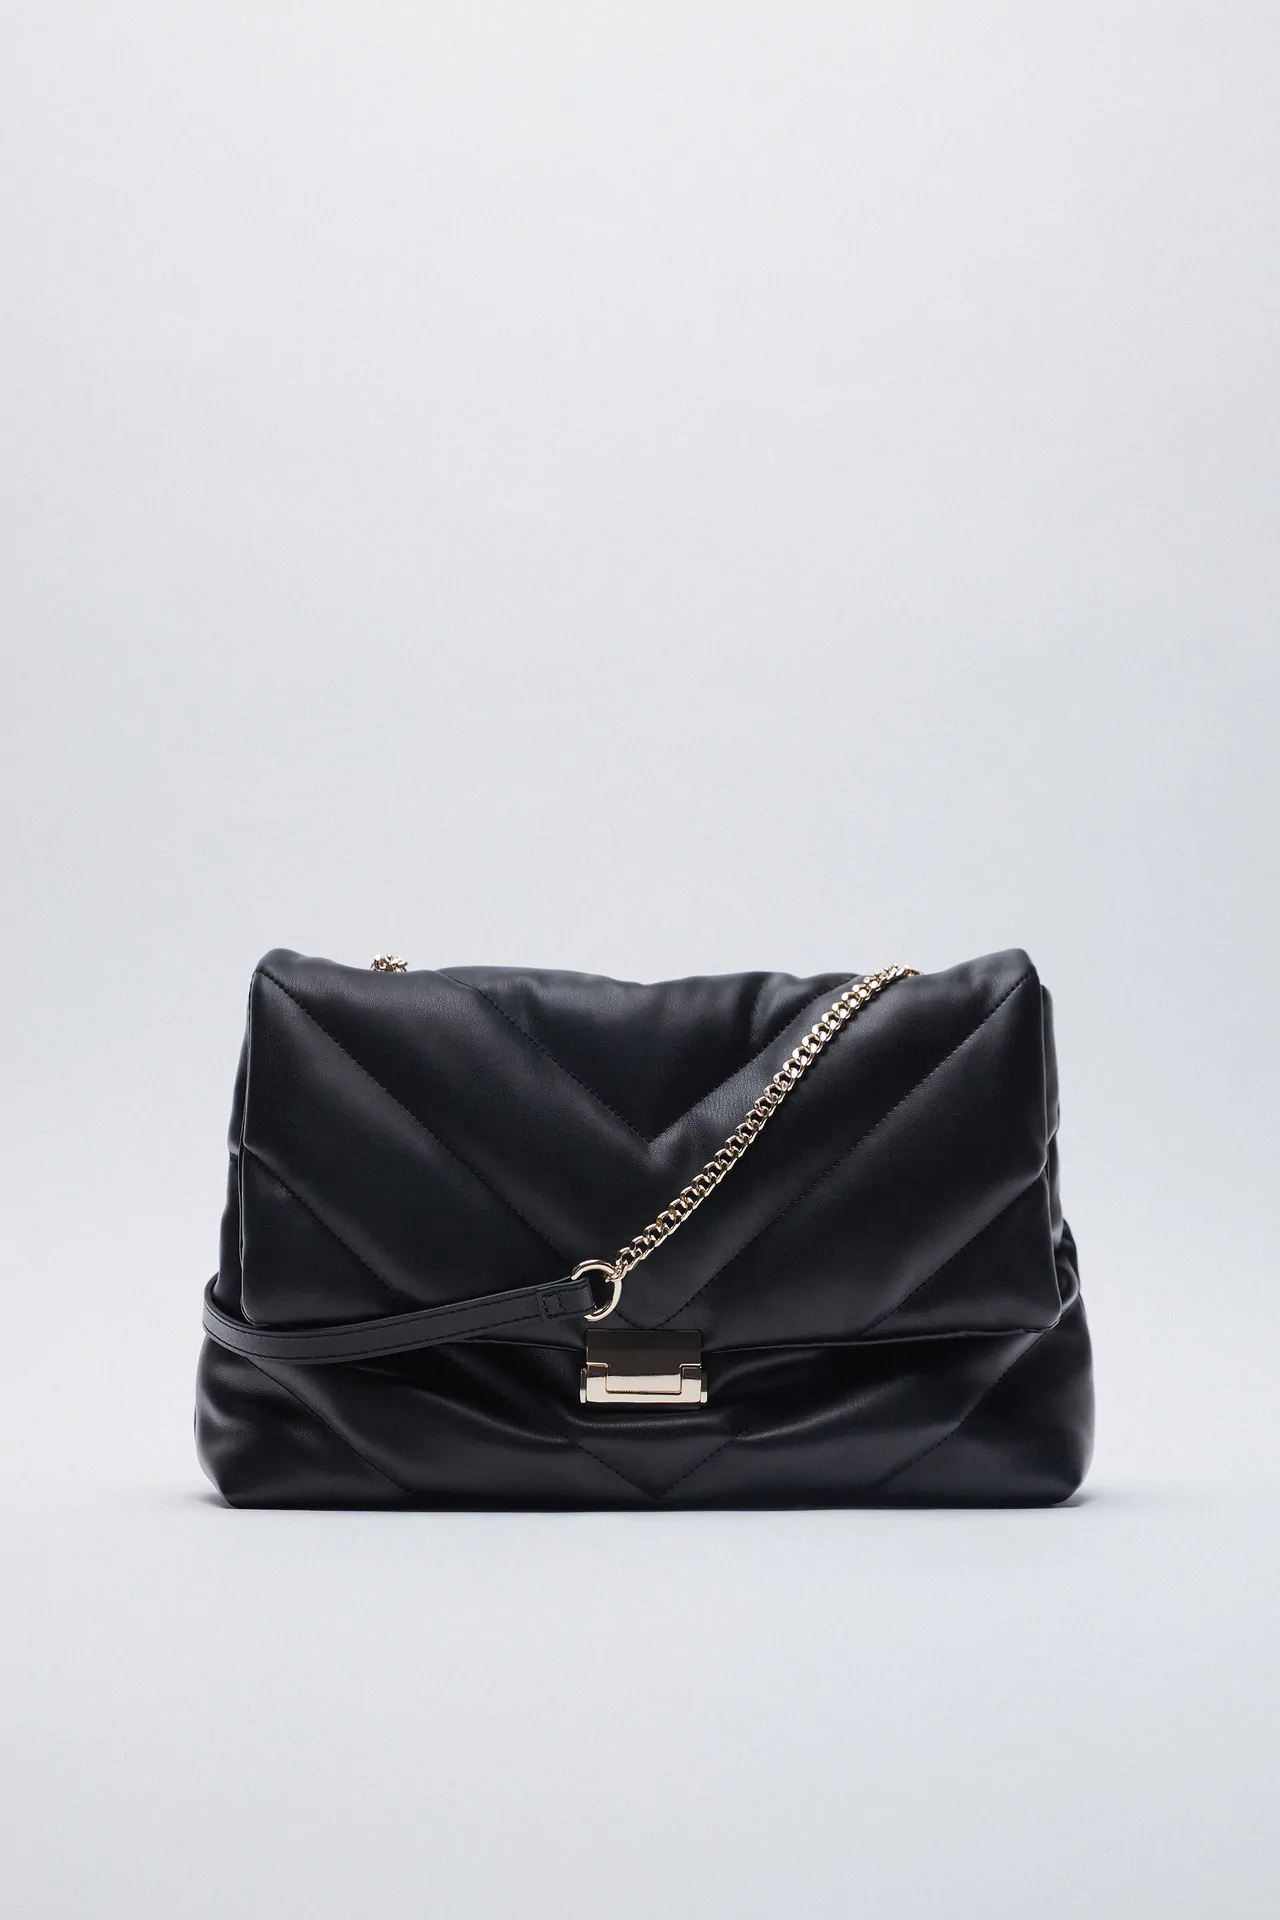 Zara crea un clon del bolso acolchado más vendido de YSL de 1.600 euros 